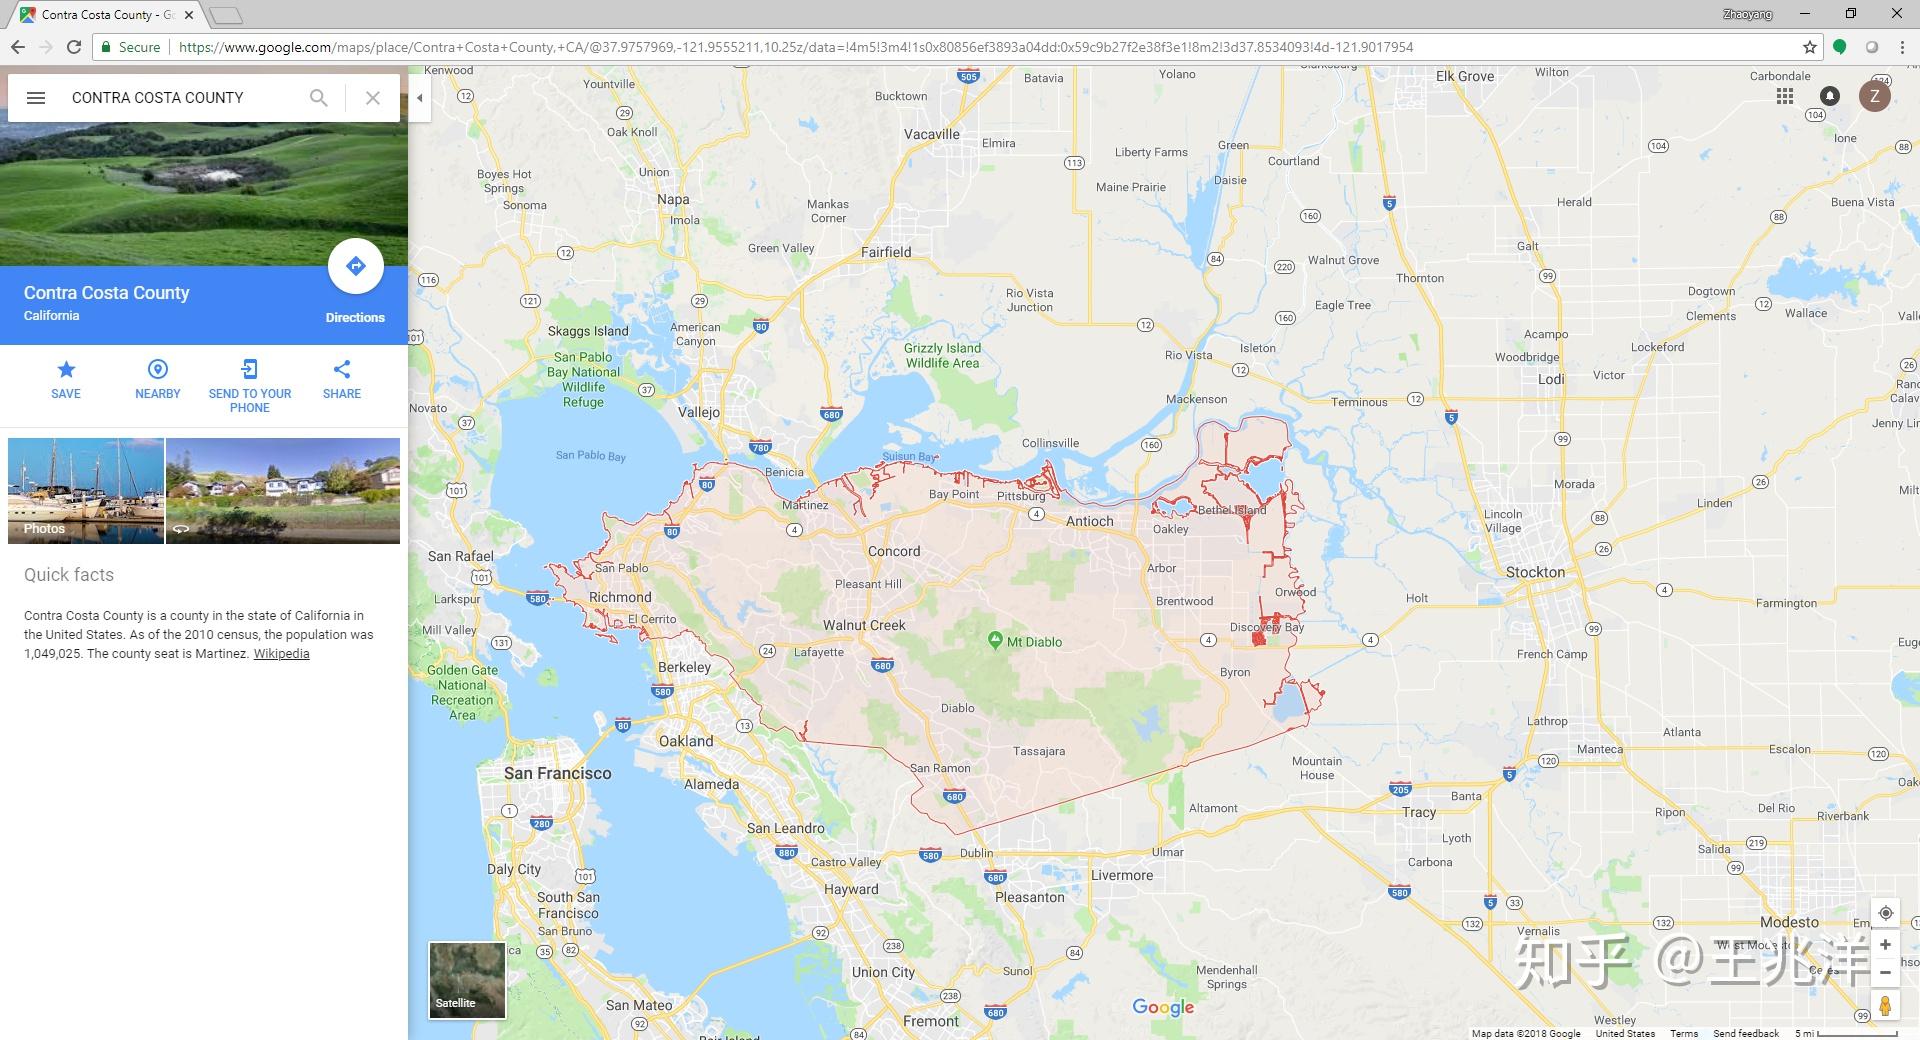 google导航下载地图为什么不能以国家或省市为单位下载,而是以方块